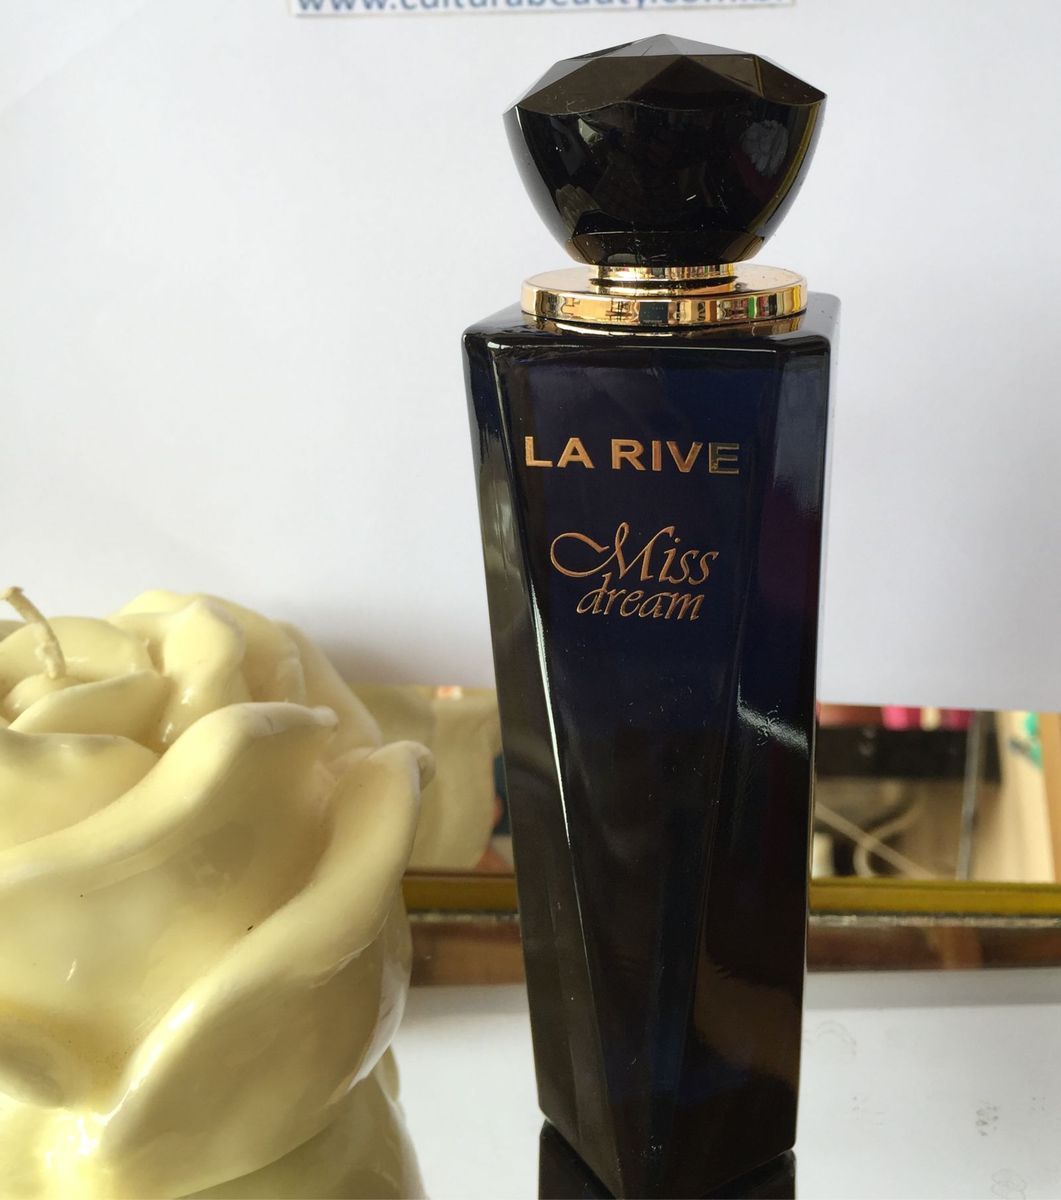 LA RIVE MISS DREAM by La Rive 